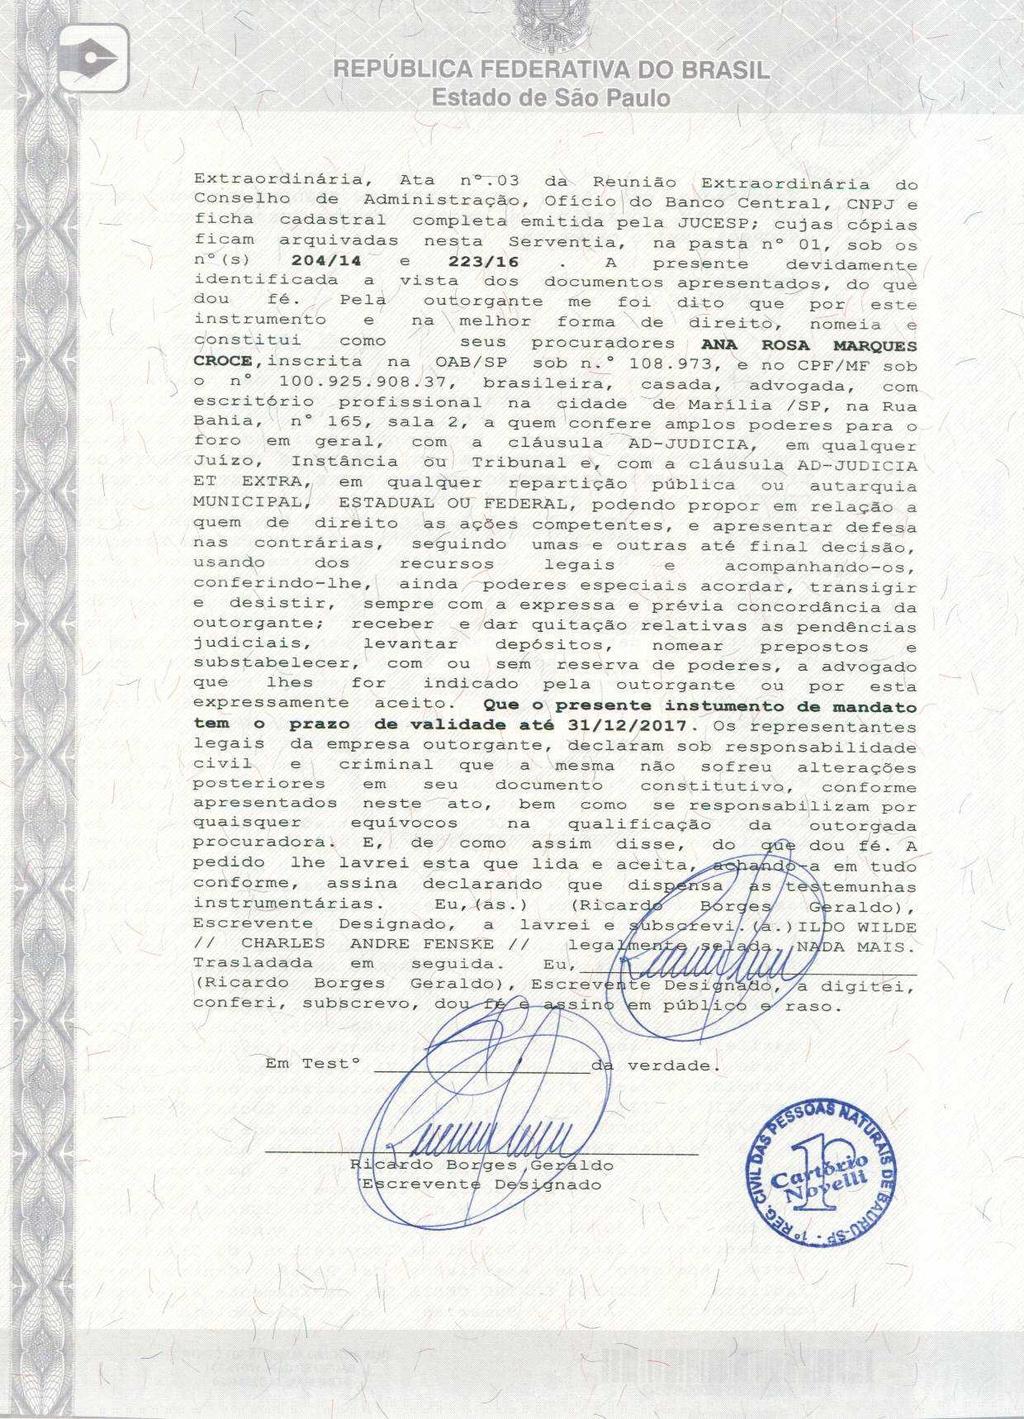 fls. 6 Este documento é cópia do original, assinado digitalmente por ANA ROSA MARQUES CROCE e Tribunal de Justica do Estado de Sao Paulo, protocolado em 30/01/2017 às 20:23, sob o número